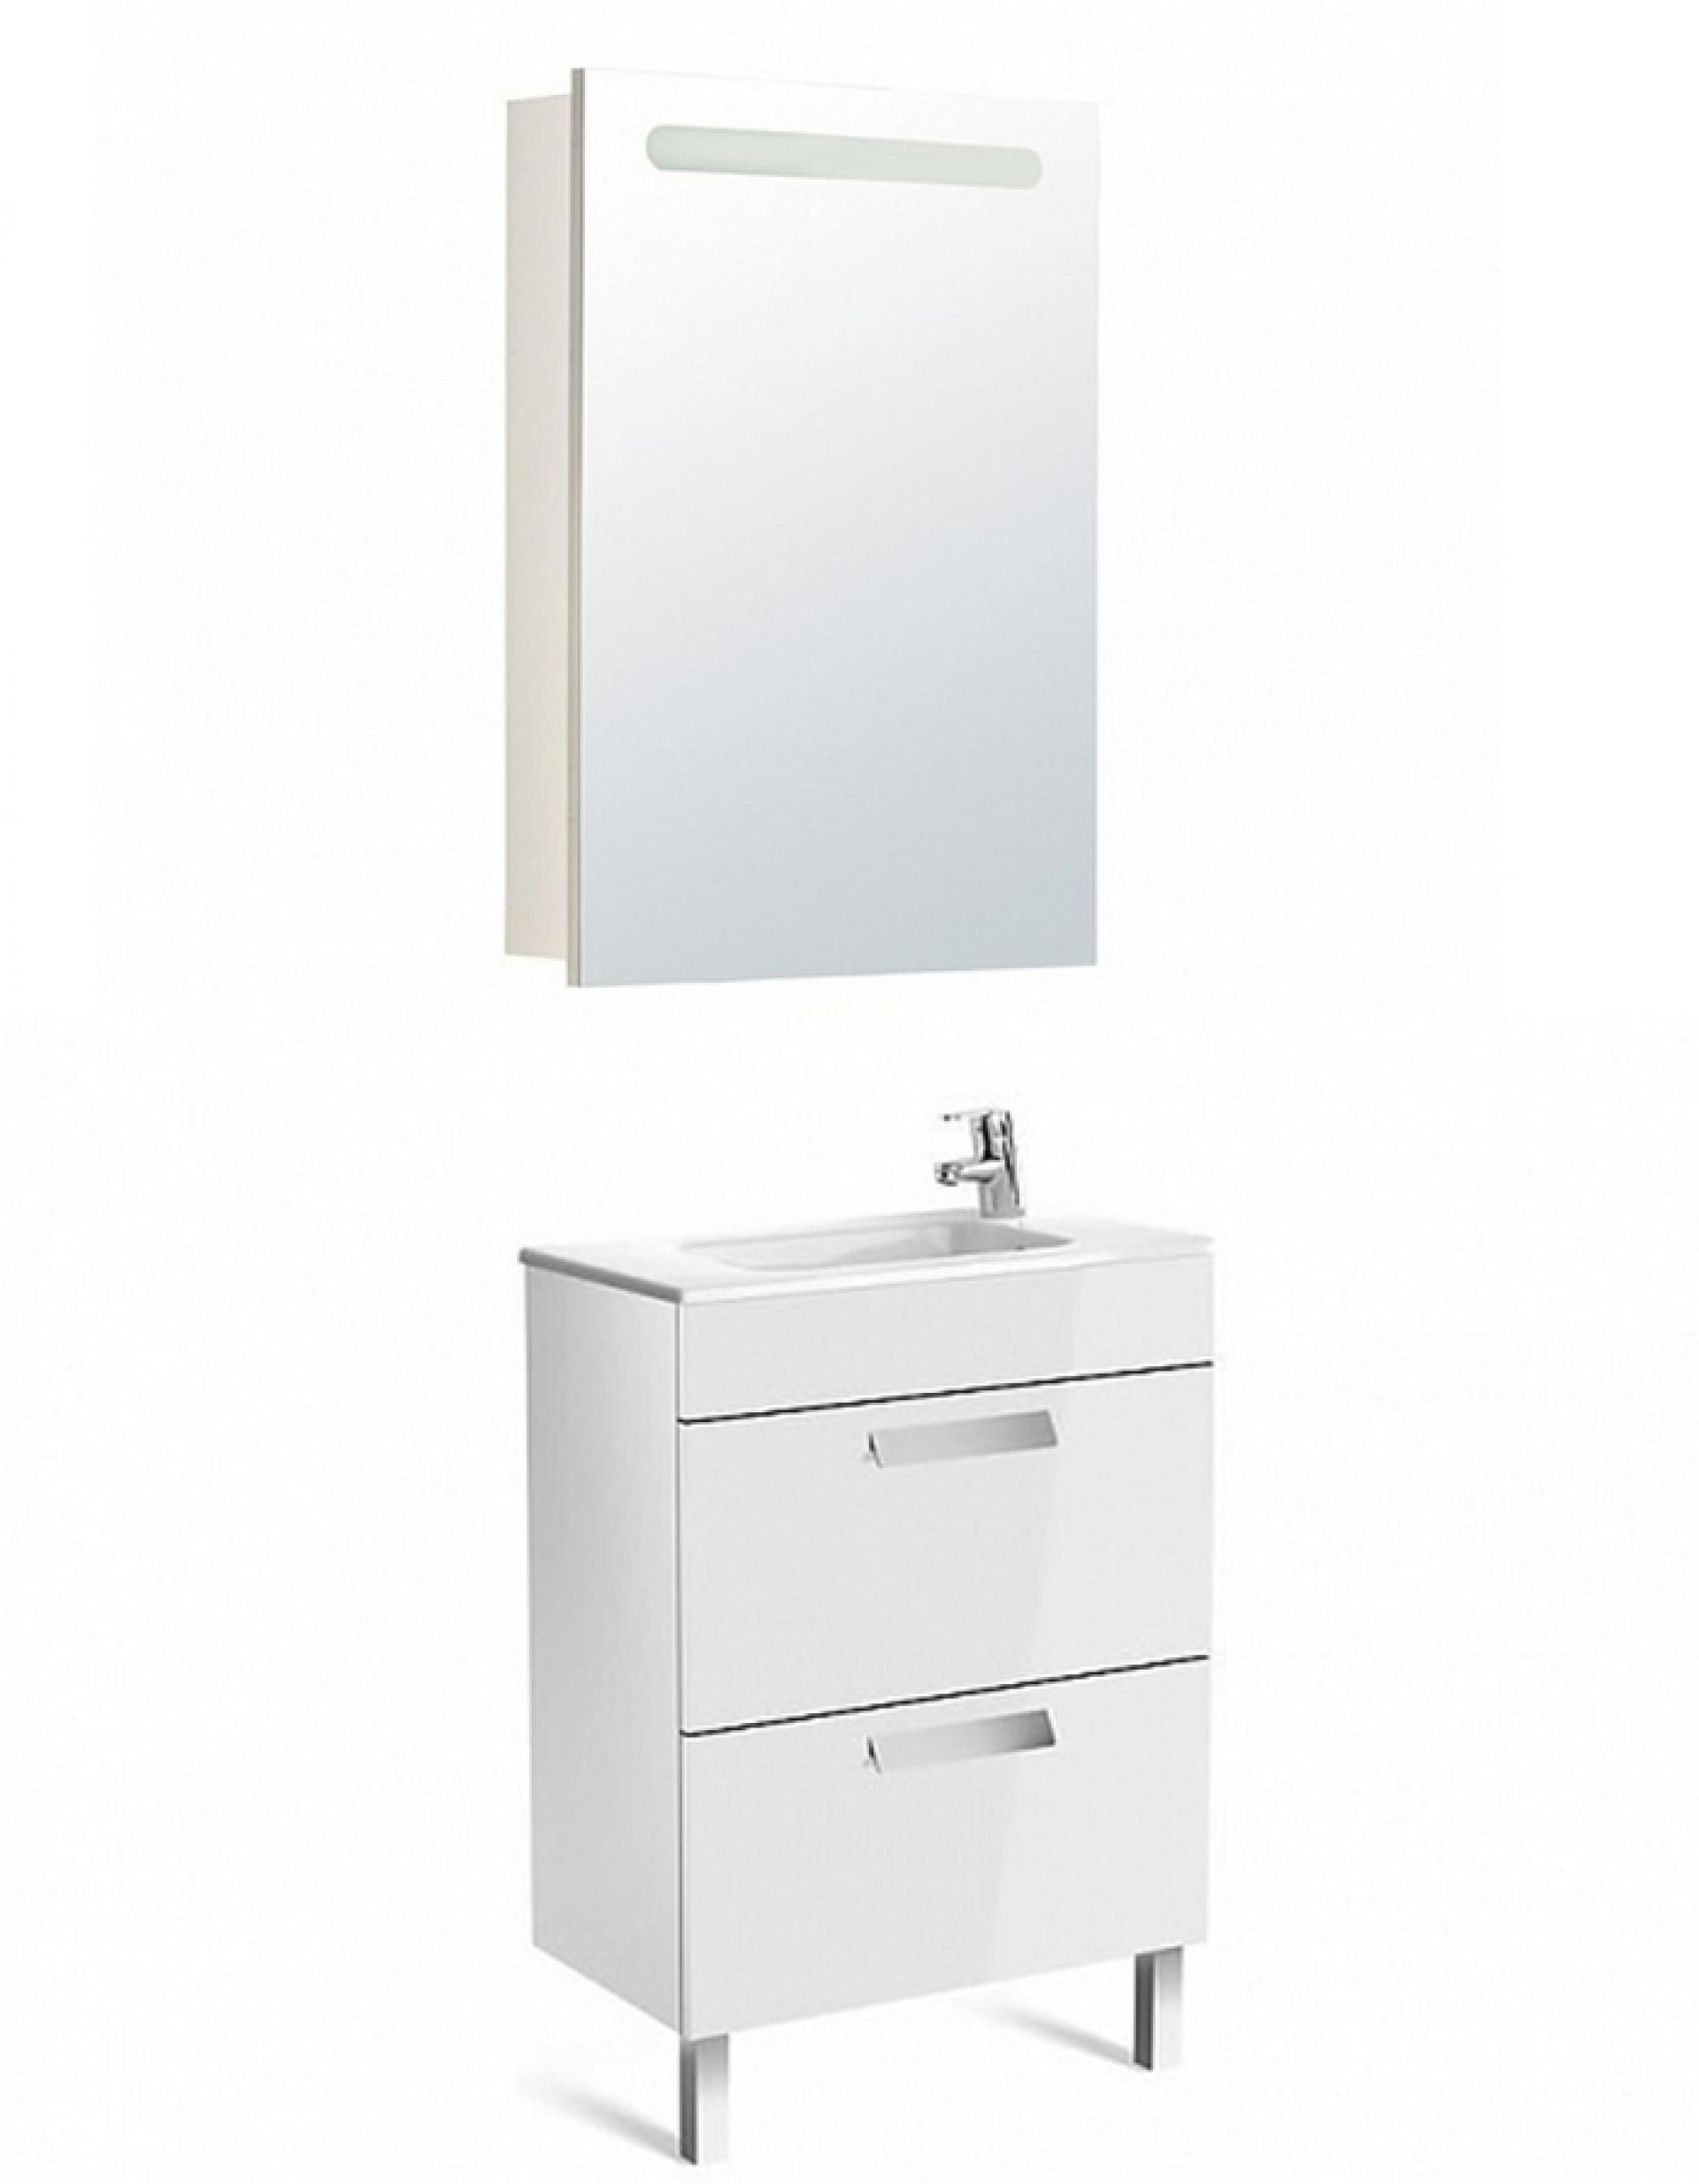 Комплект мебели для ванной Roca Debba 60 см Roca Debba белая (тумба+раковина+зеркало левое)